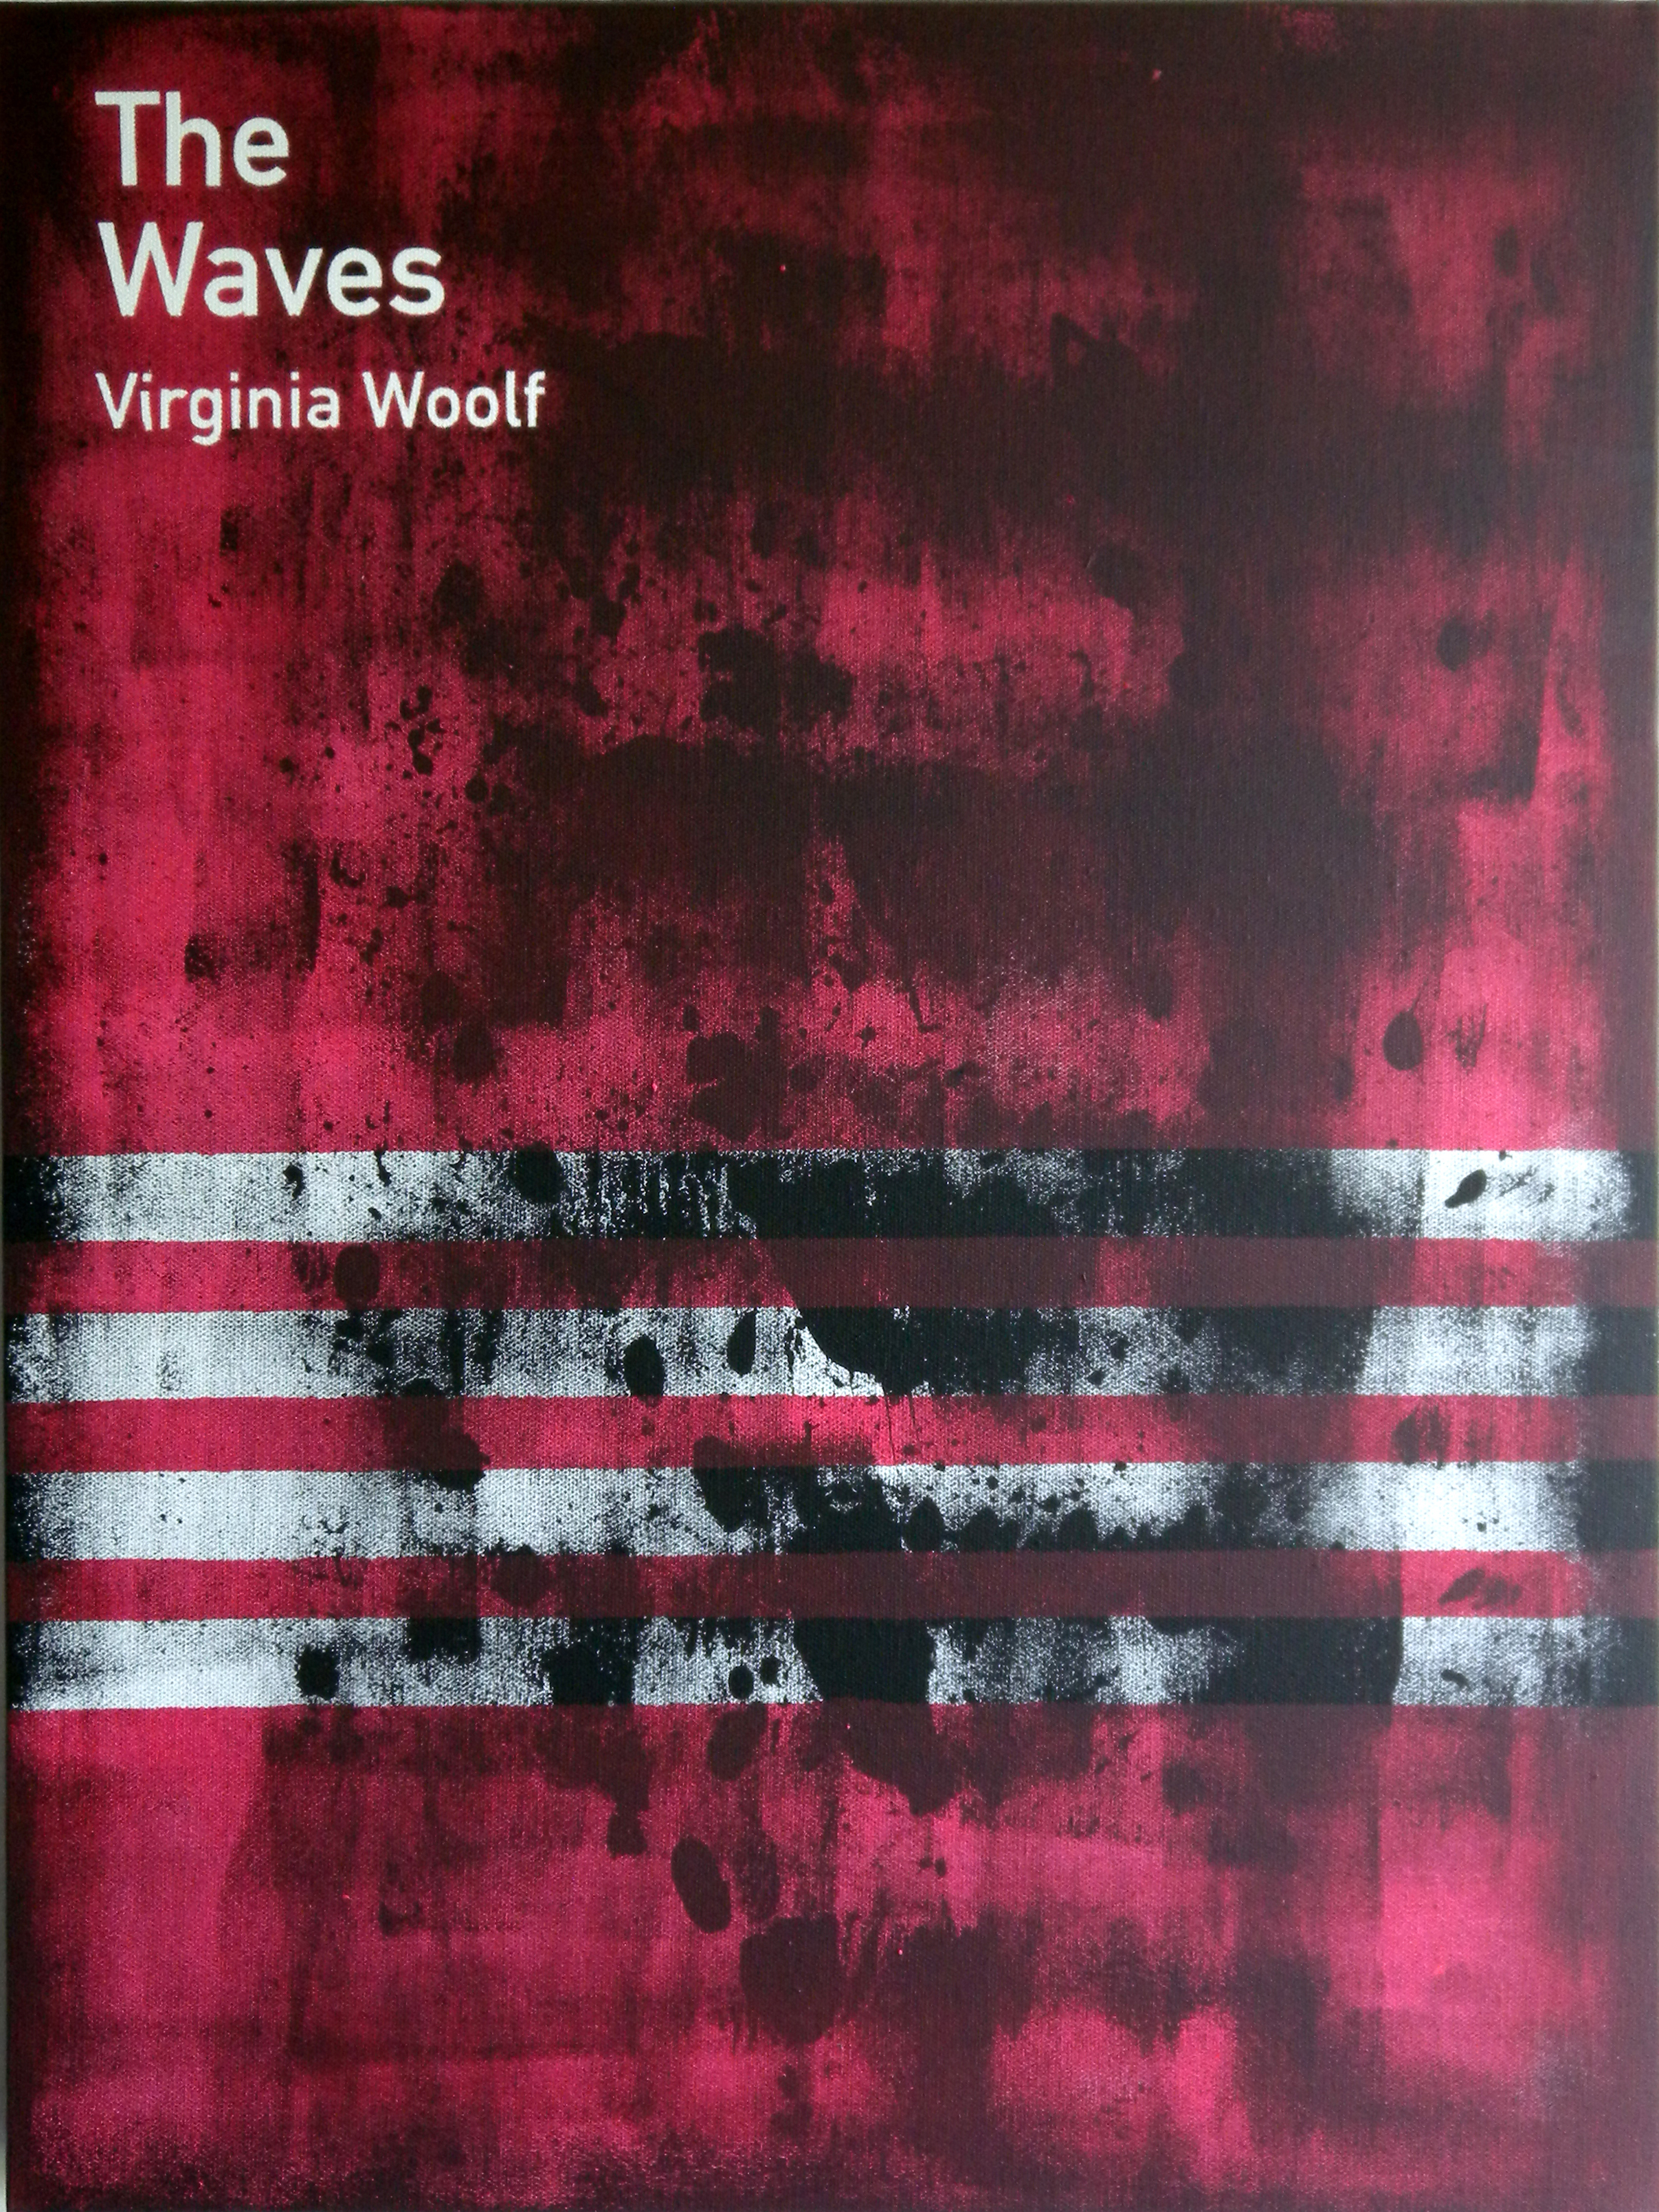   The Waves / Virginia Woolf (2)  2013 Acrylic on canvas 46 x 61 x 3.5 cm 